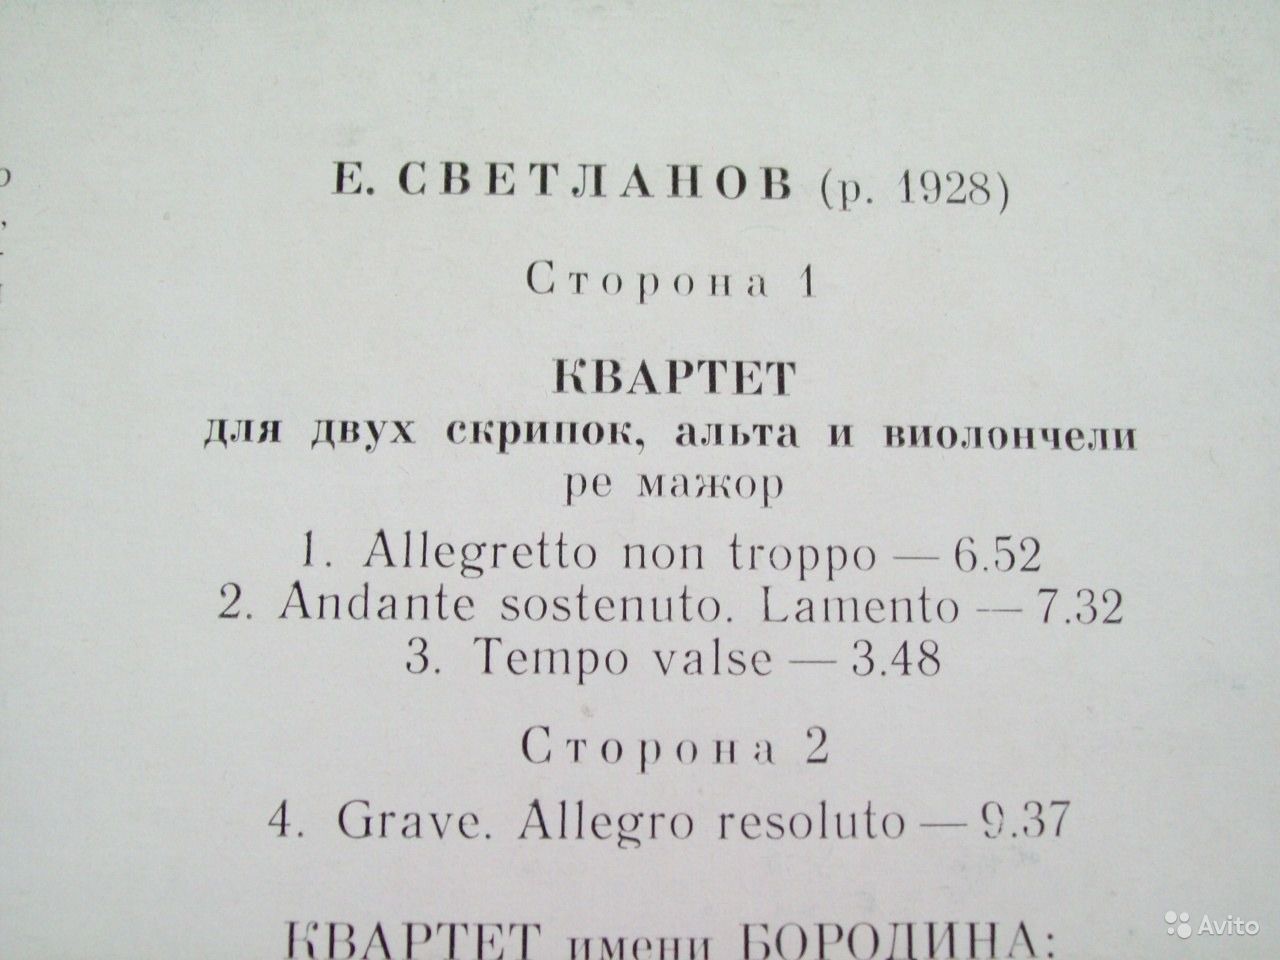 Е. СВЕТЛАНОВ (1928). Квартет / Лирический вальс